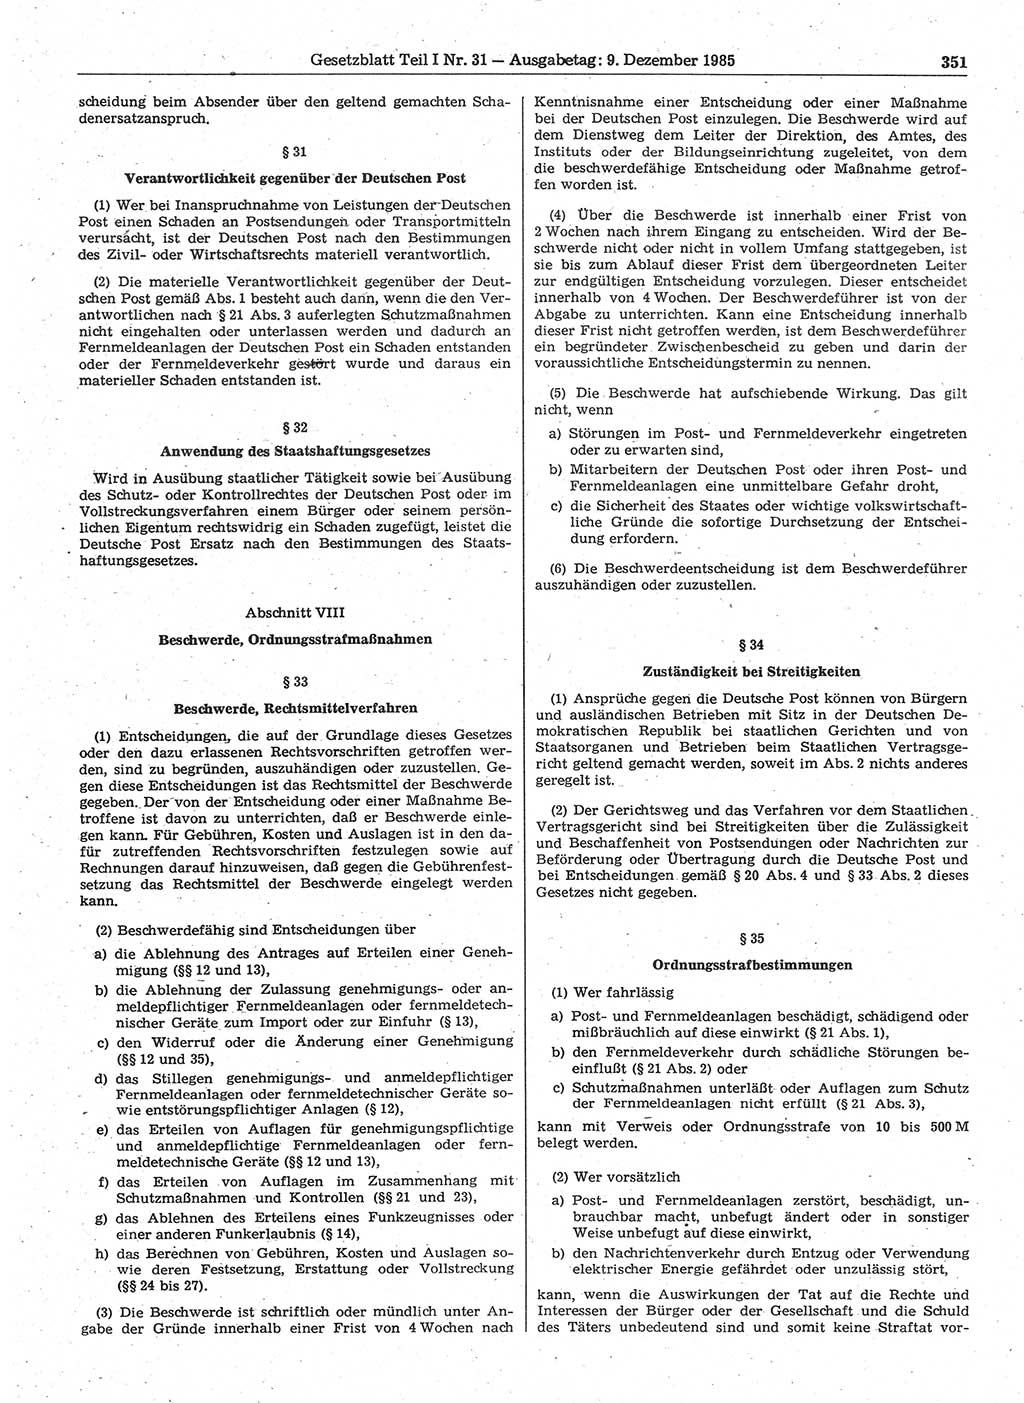 Gesetzblatt (GBl.) der Deutschen Demokratischen Republik (DDR) Teil Ⅰ 1985, Seite 351 (GBl. DDR Ⅰ 1985, S. 351)